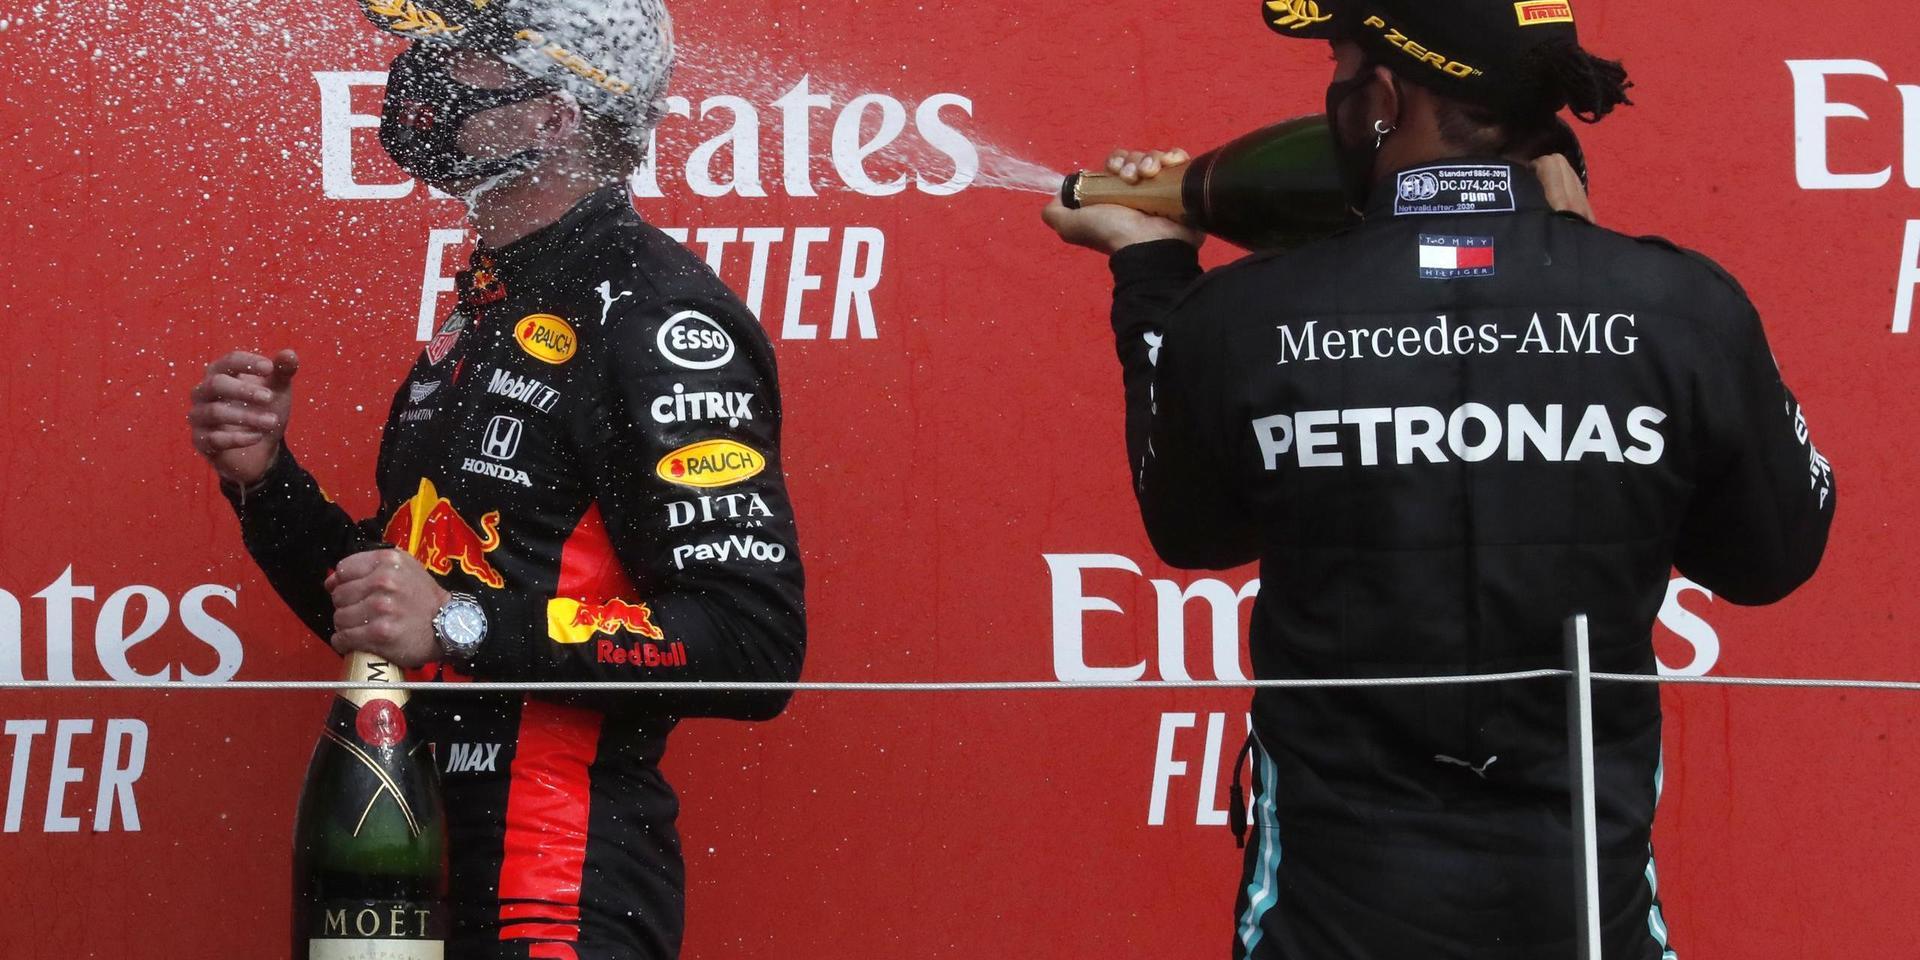 Red Bulls Max Verstappen, vänster, sprutades ned med champagne av Mercedes regerande världsmästare Lewis Hamilton efter F1-segern på Silverstone.